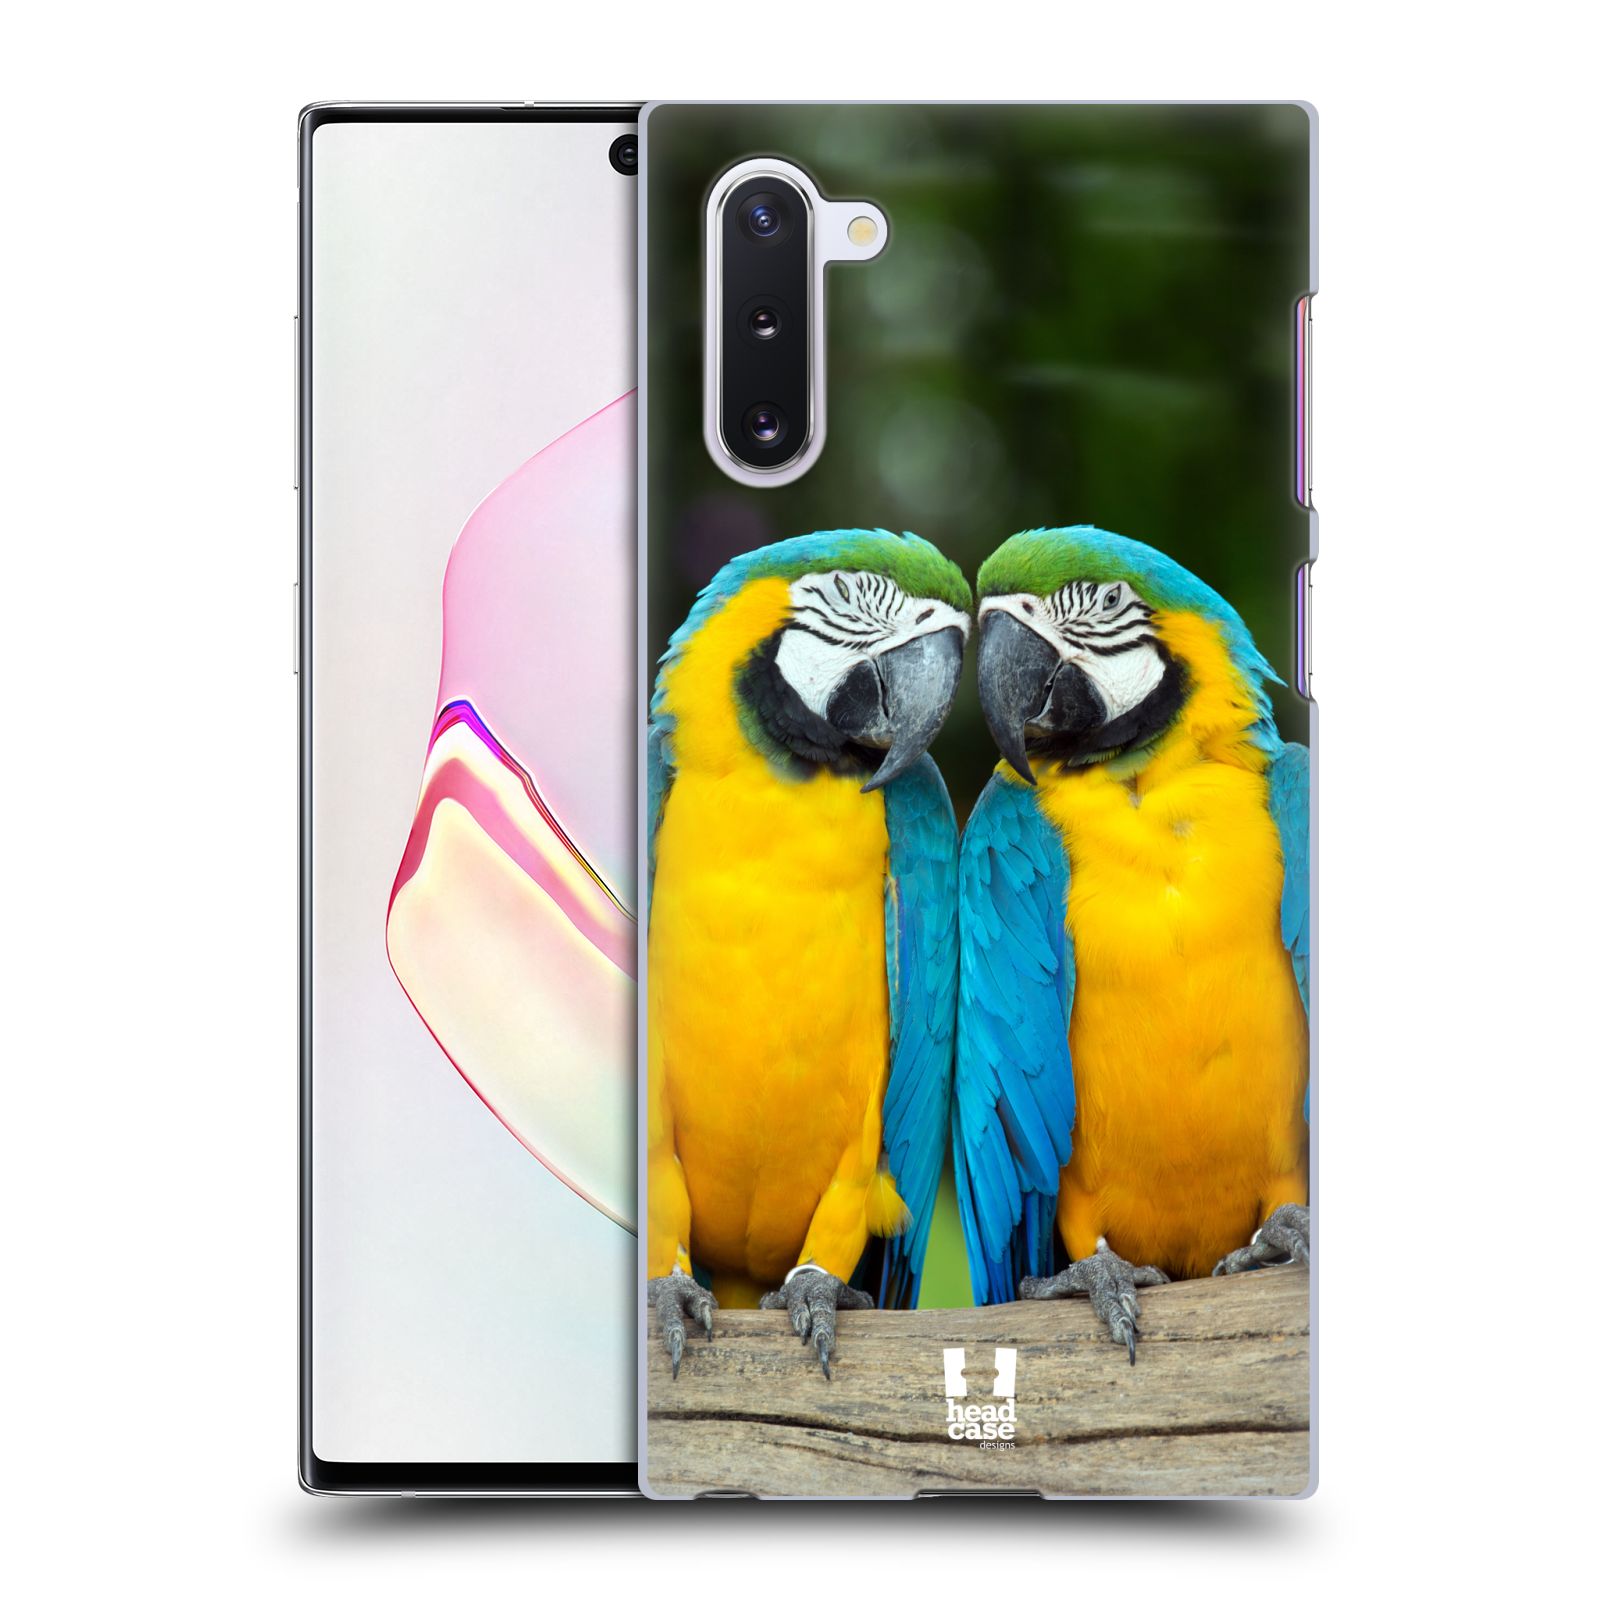 Pouzdro na mobil Samsung Galaxy Note 10 - HEAD CASE - vzor slavná zvířata foto dva papoušci